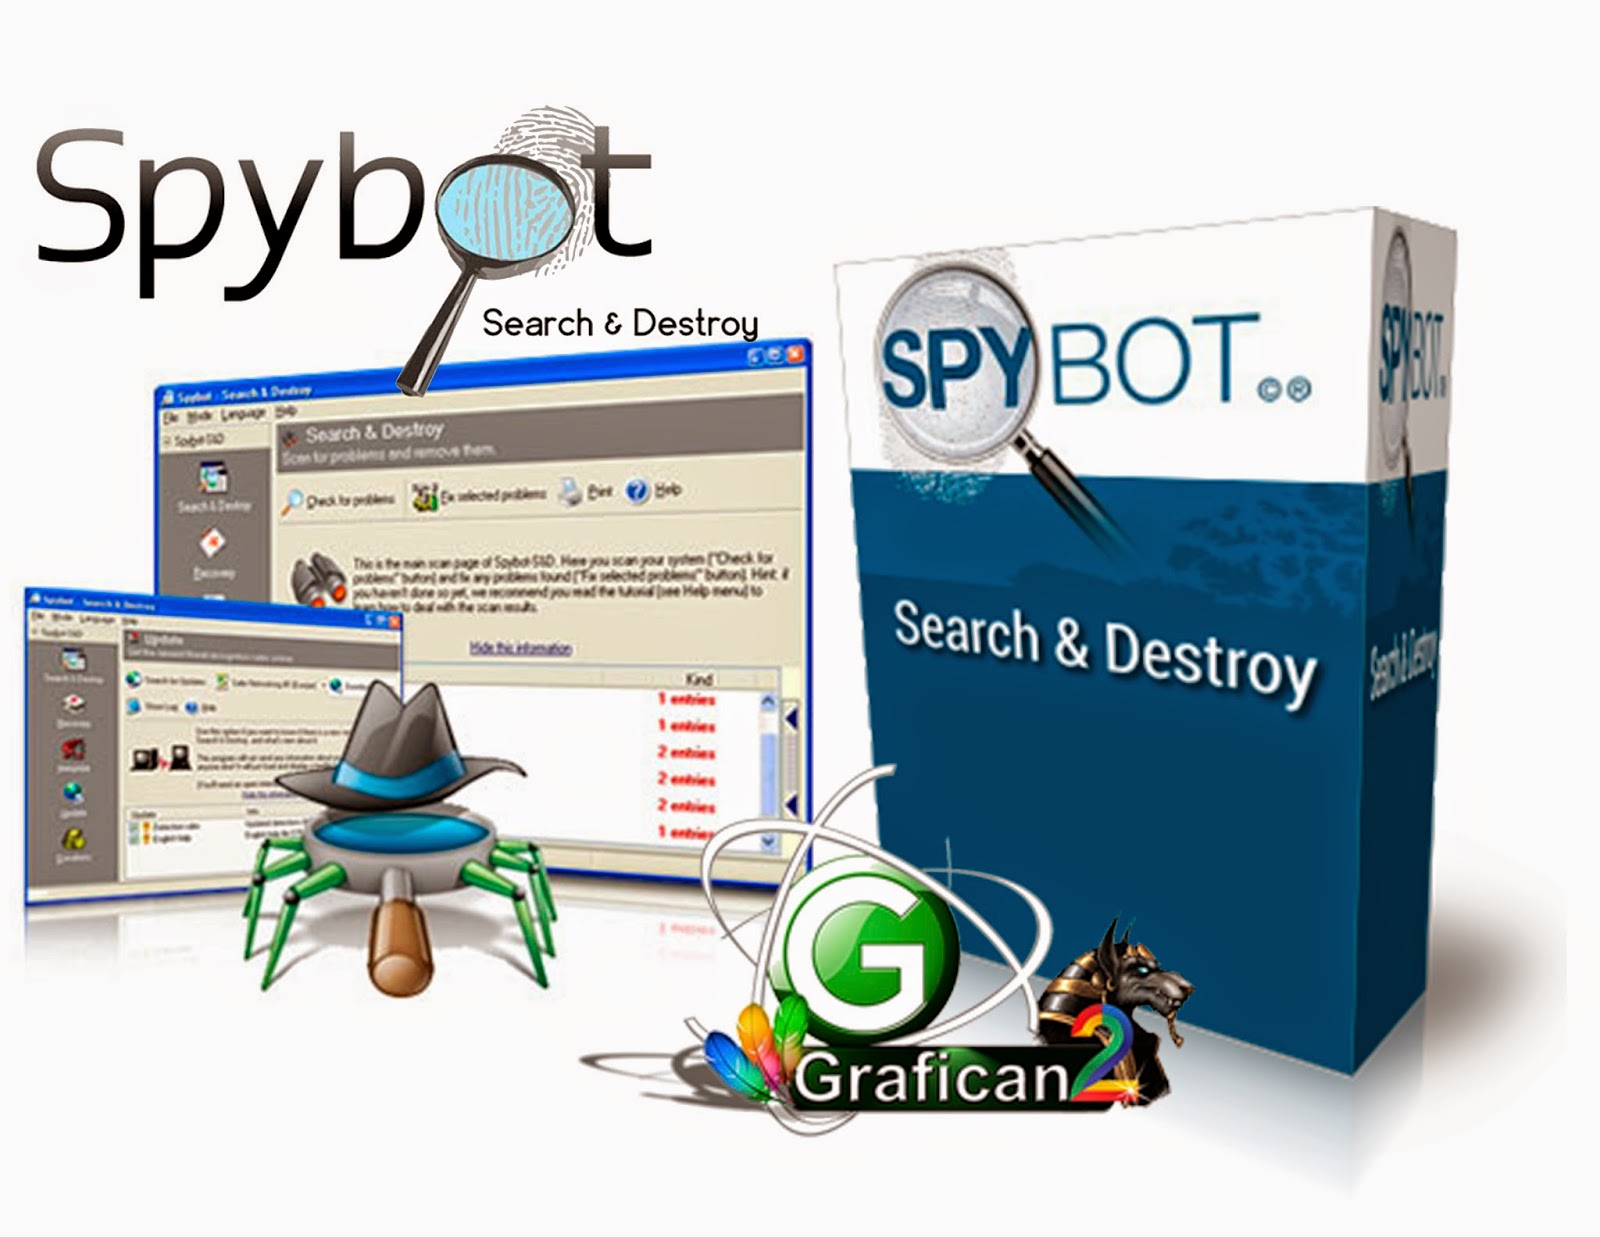 Spybot click. Spybot. Spybot - search & destroy. Spybot search & destroy иконка. Spybot отзывы.